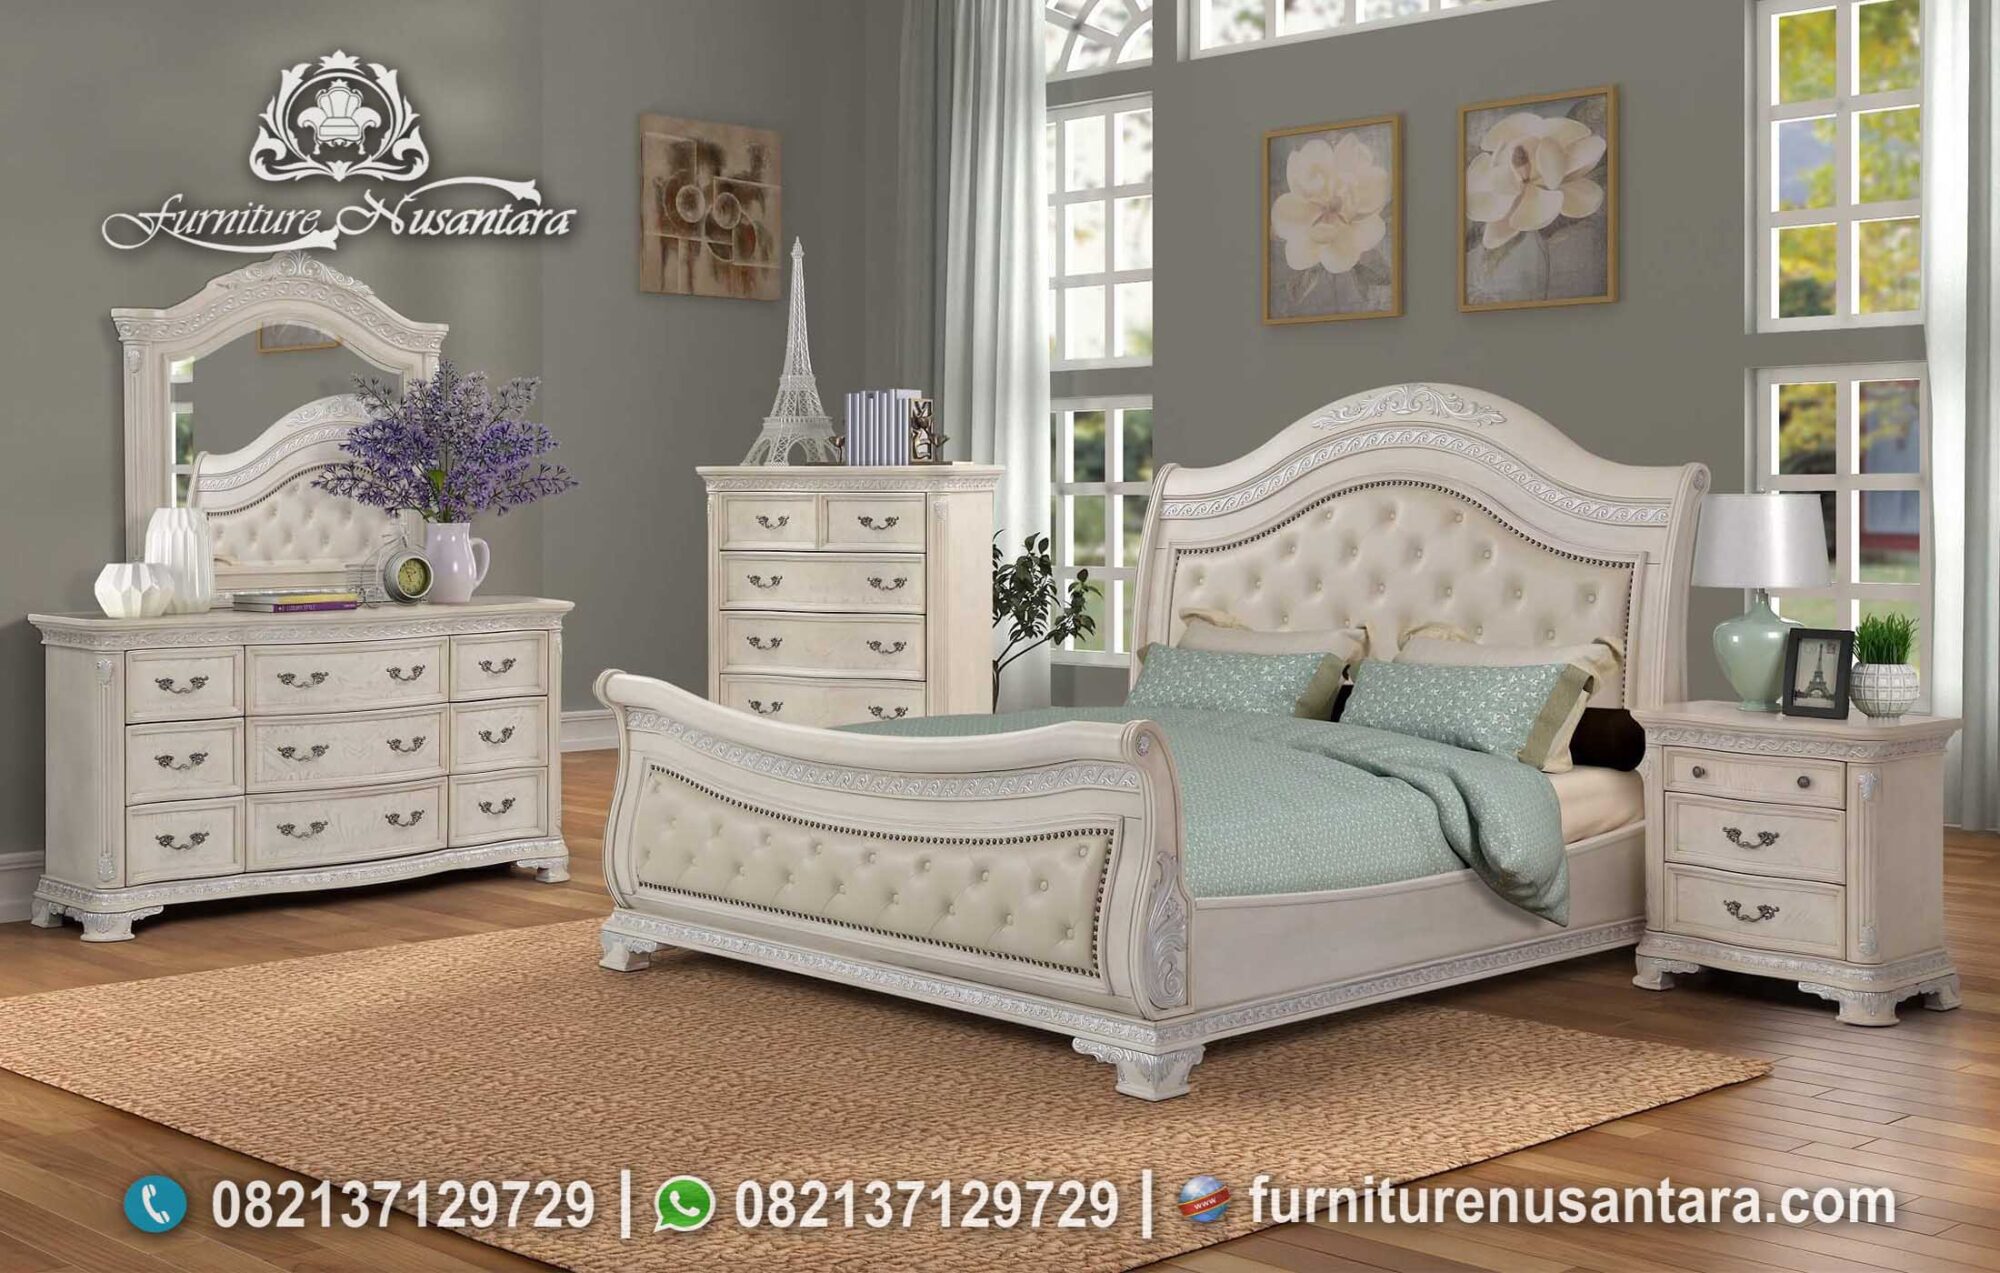 Desain Kamar Tidur Modern Model Terbaru KS-160, Furniture Nusantara